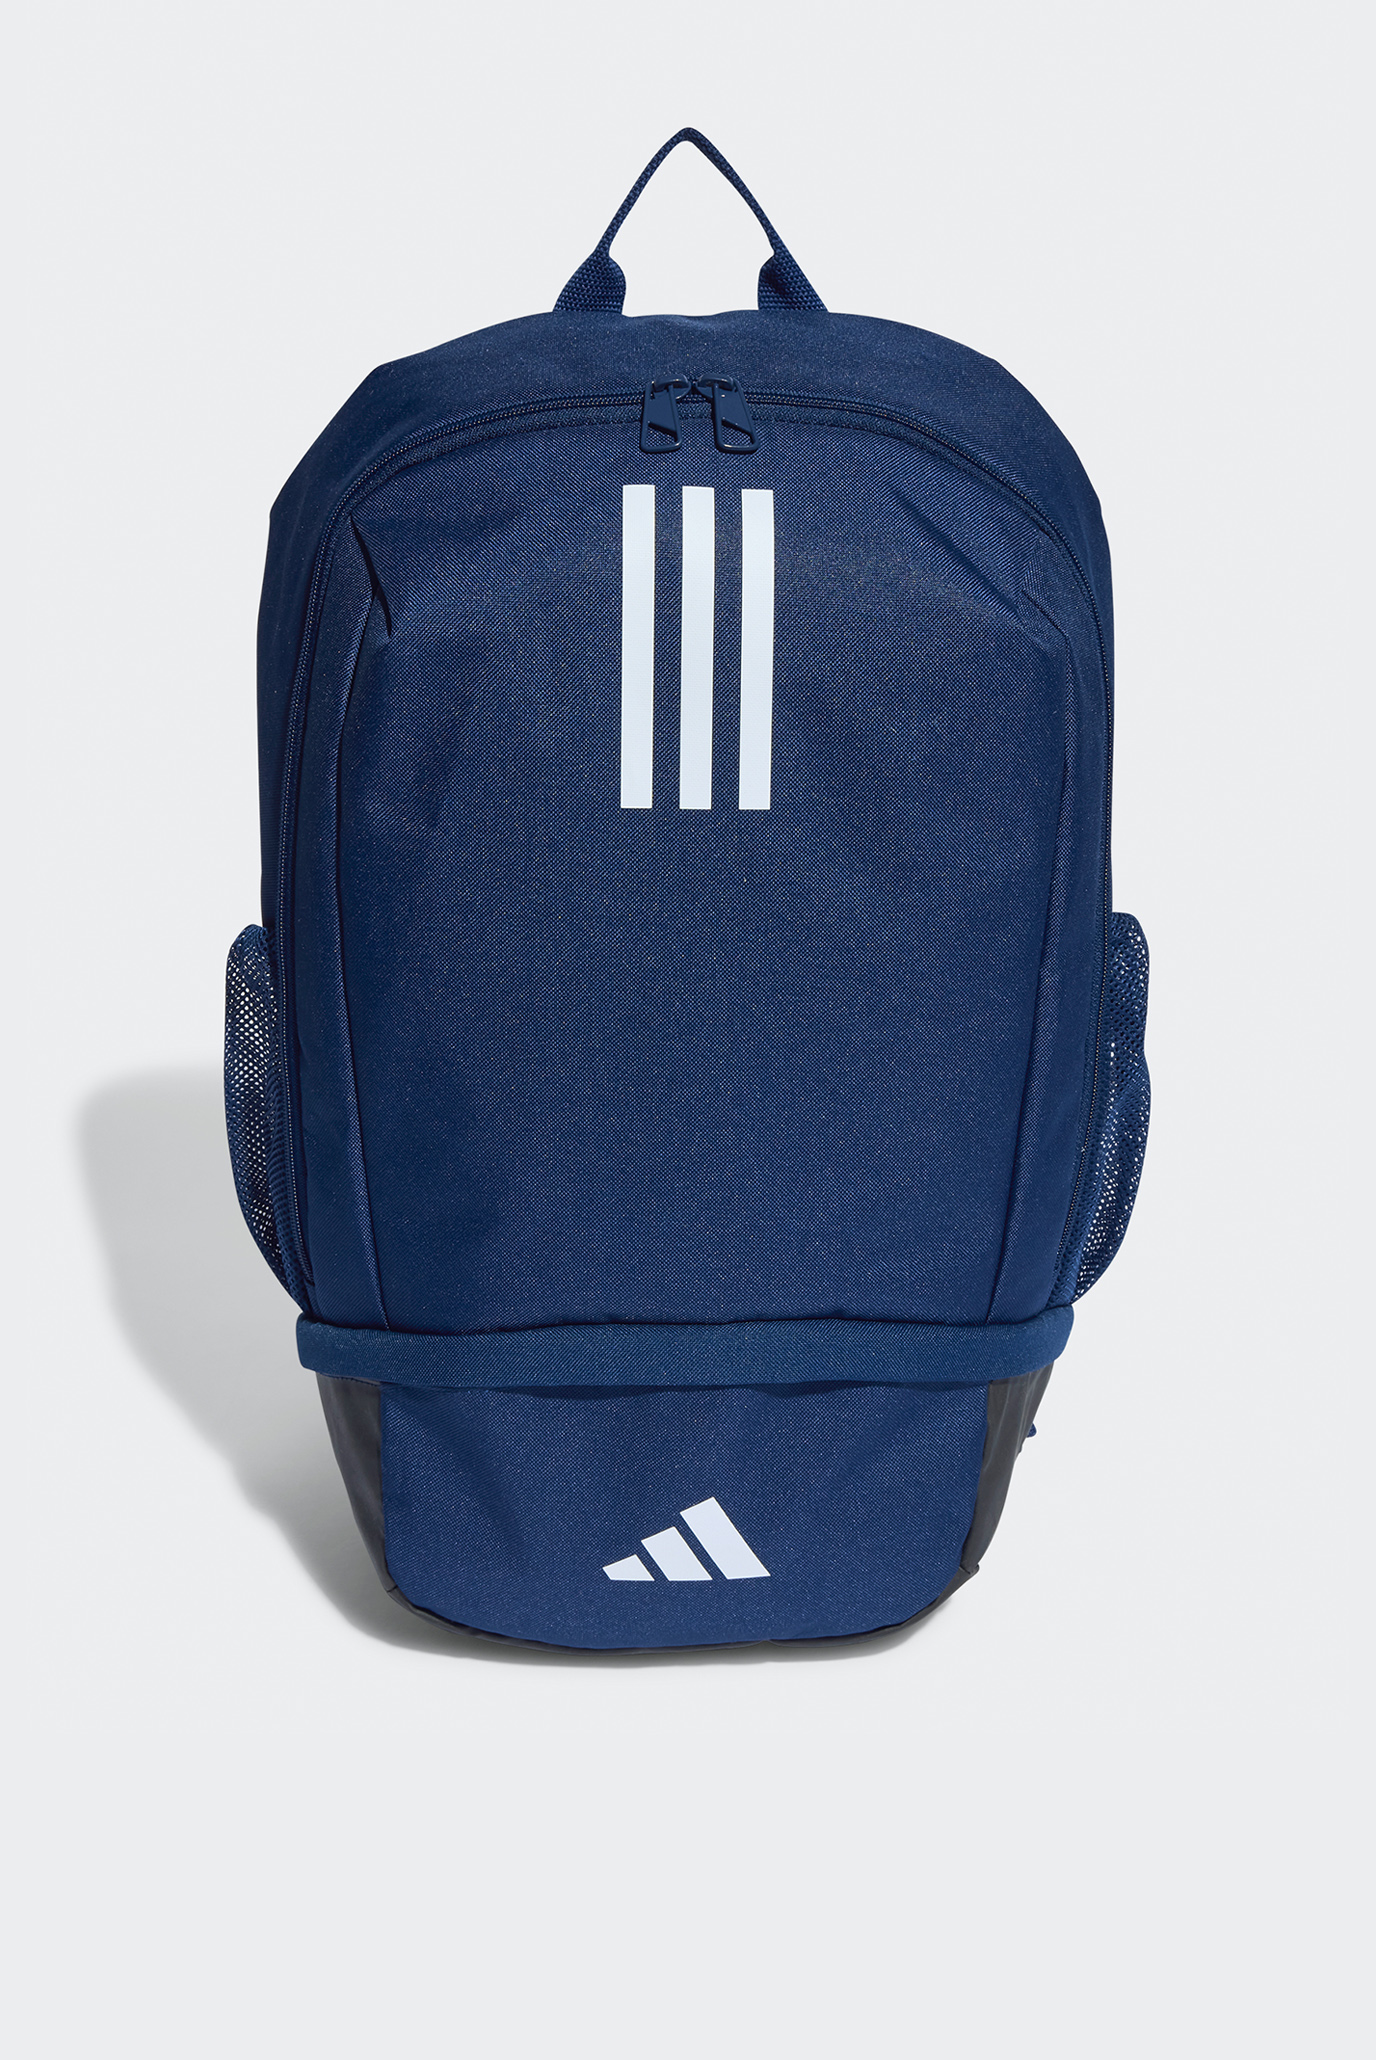 Синий рюкзак Tiro 23 League Backpack 1